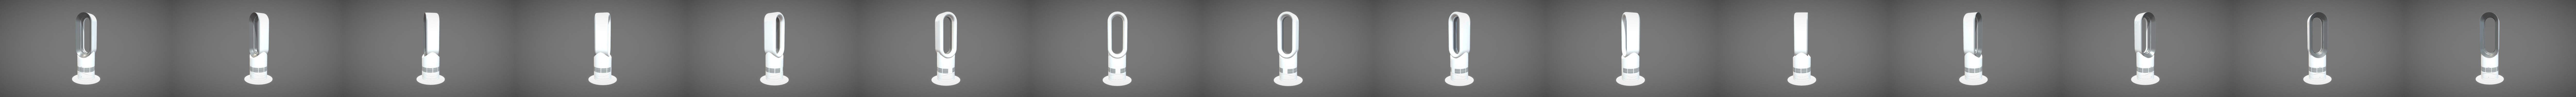 STL file Air Purifier Dyson style Bladeless Fan 🏠・3D print